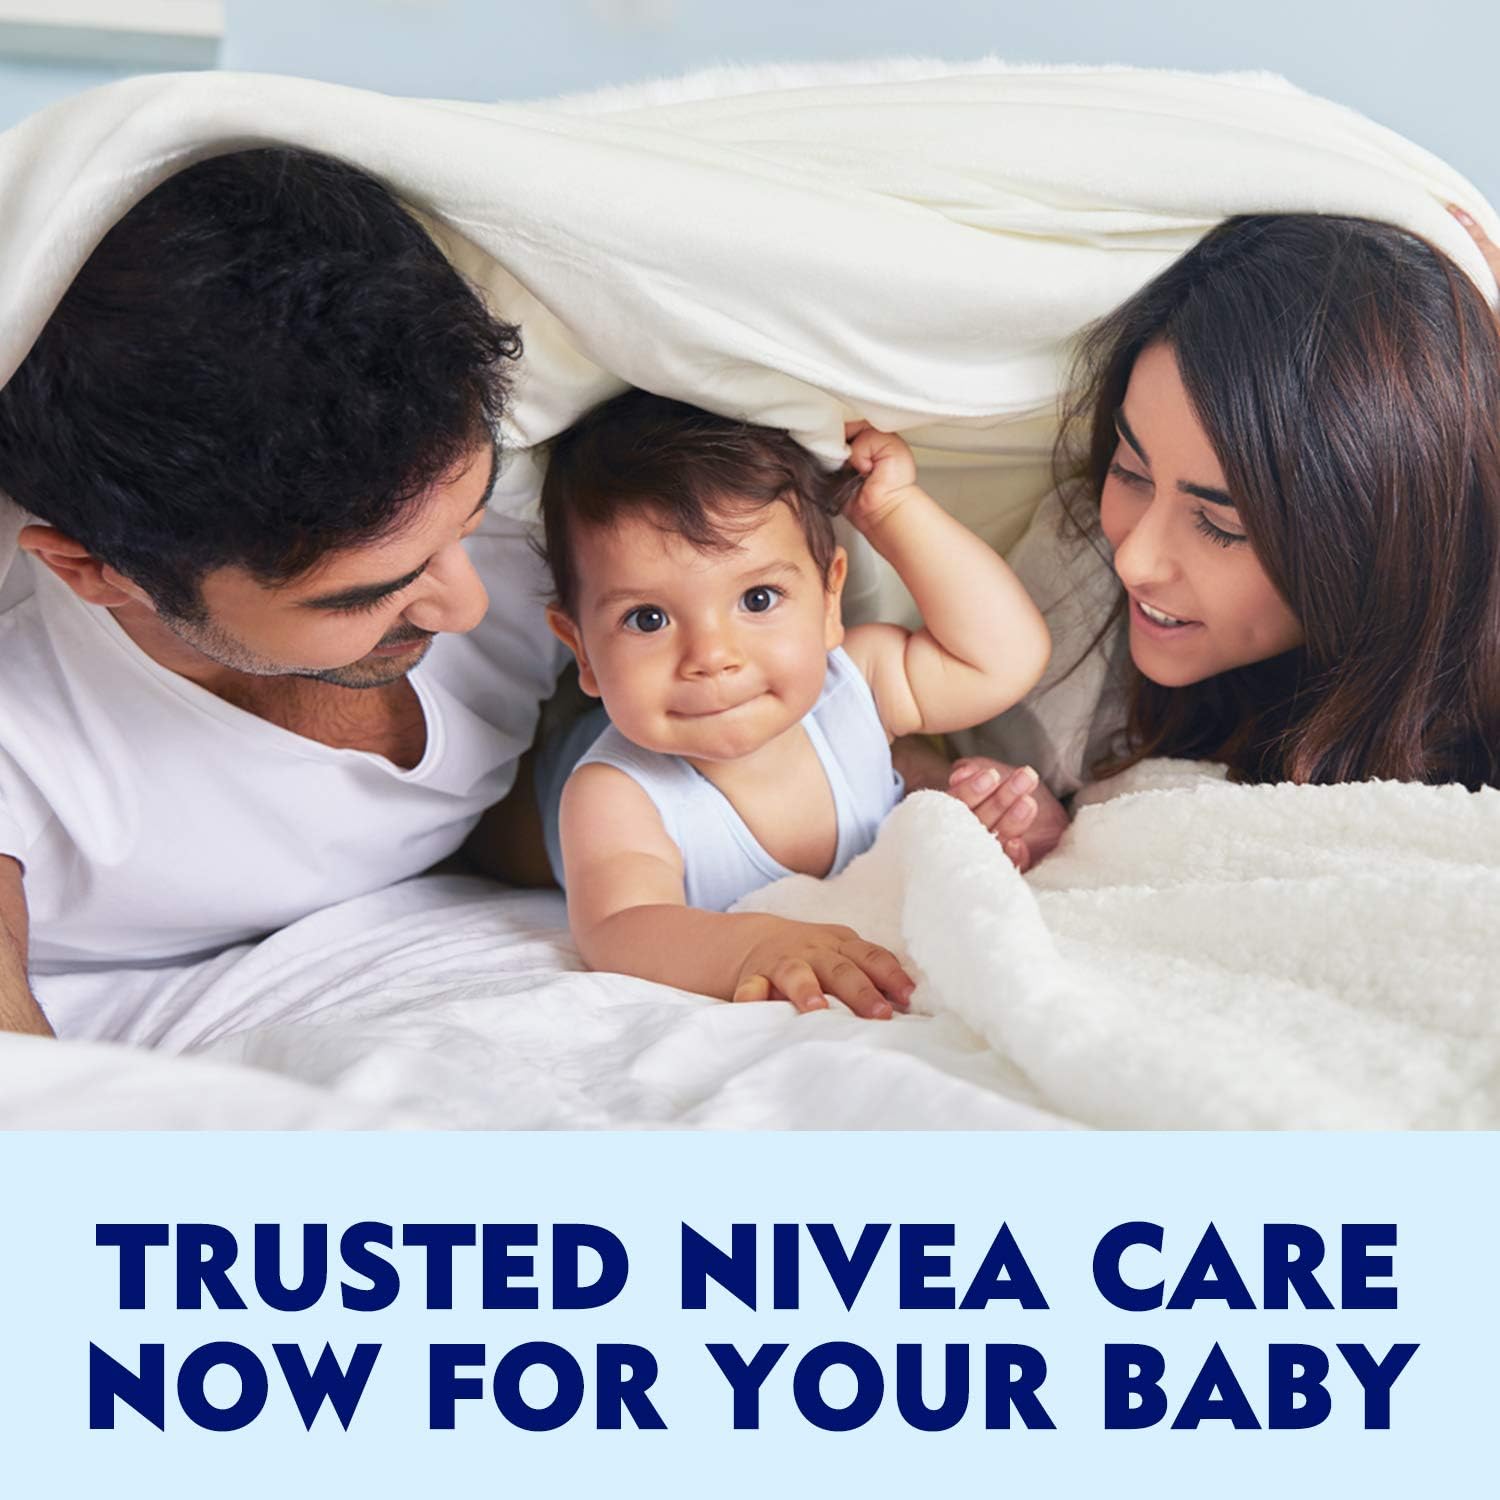 NIVEA Baby Bath Shampoo, Head To Toe Calendula Extract